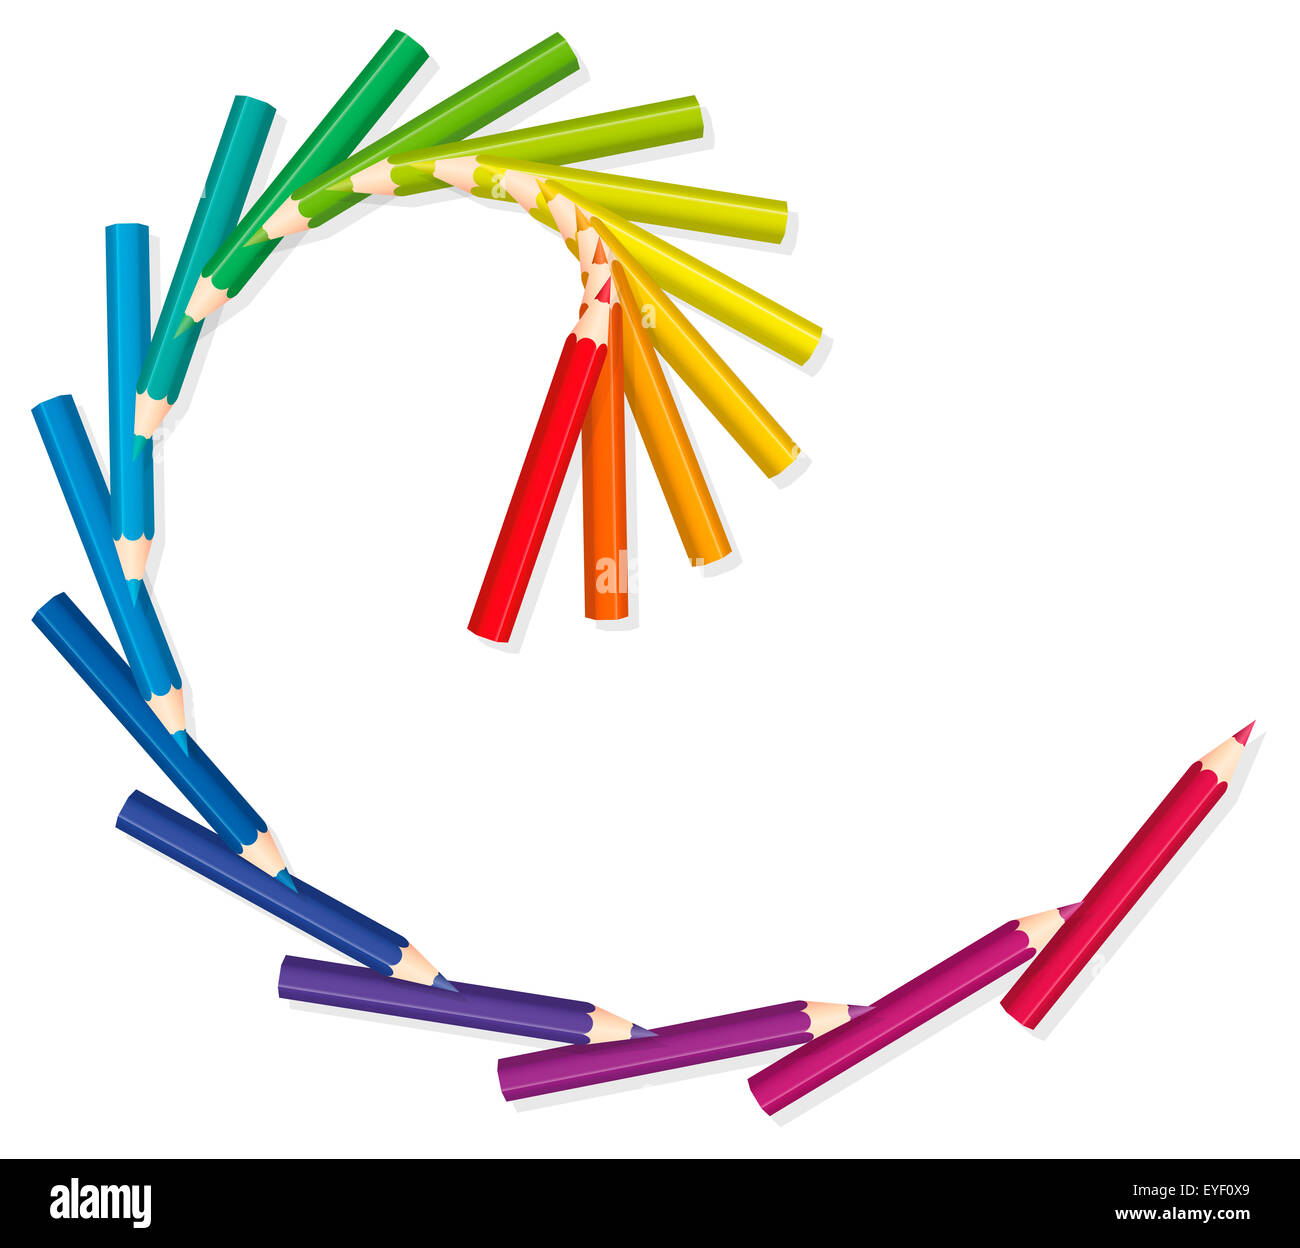 Lápices de colores que forman un corte dorado en espiral. Ilustración sobre fondo blanco. Foto de stock